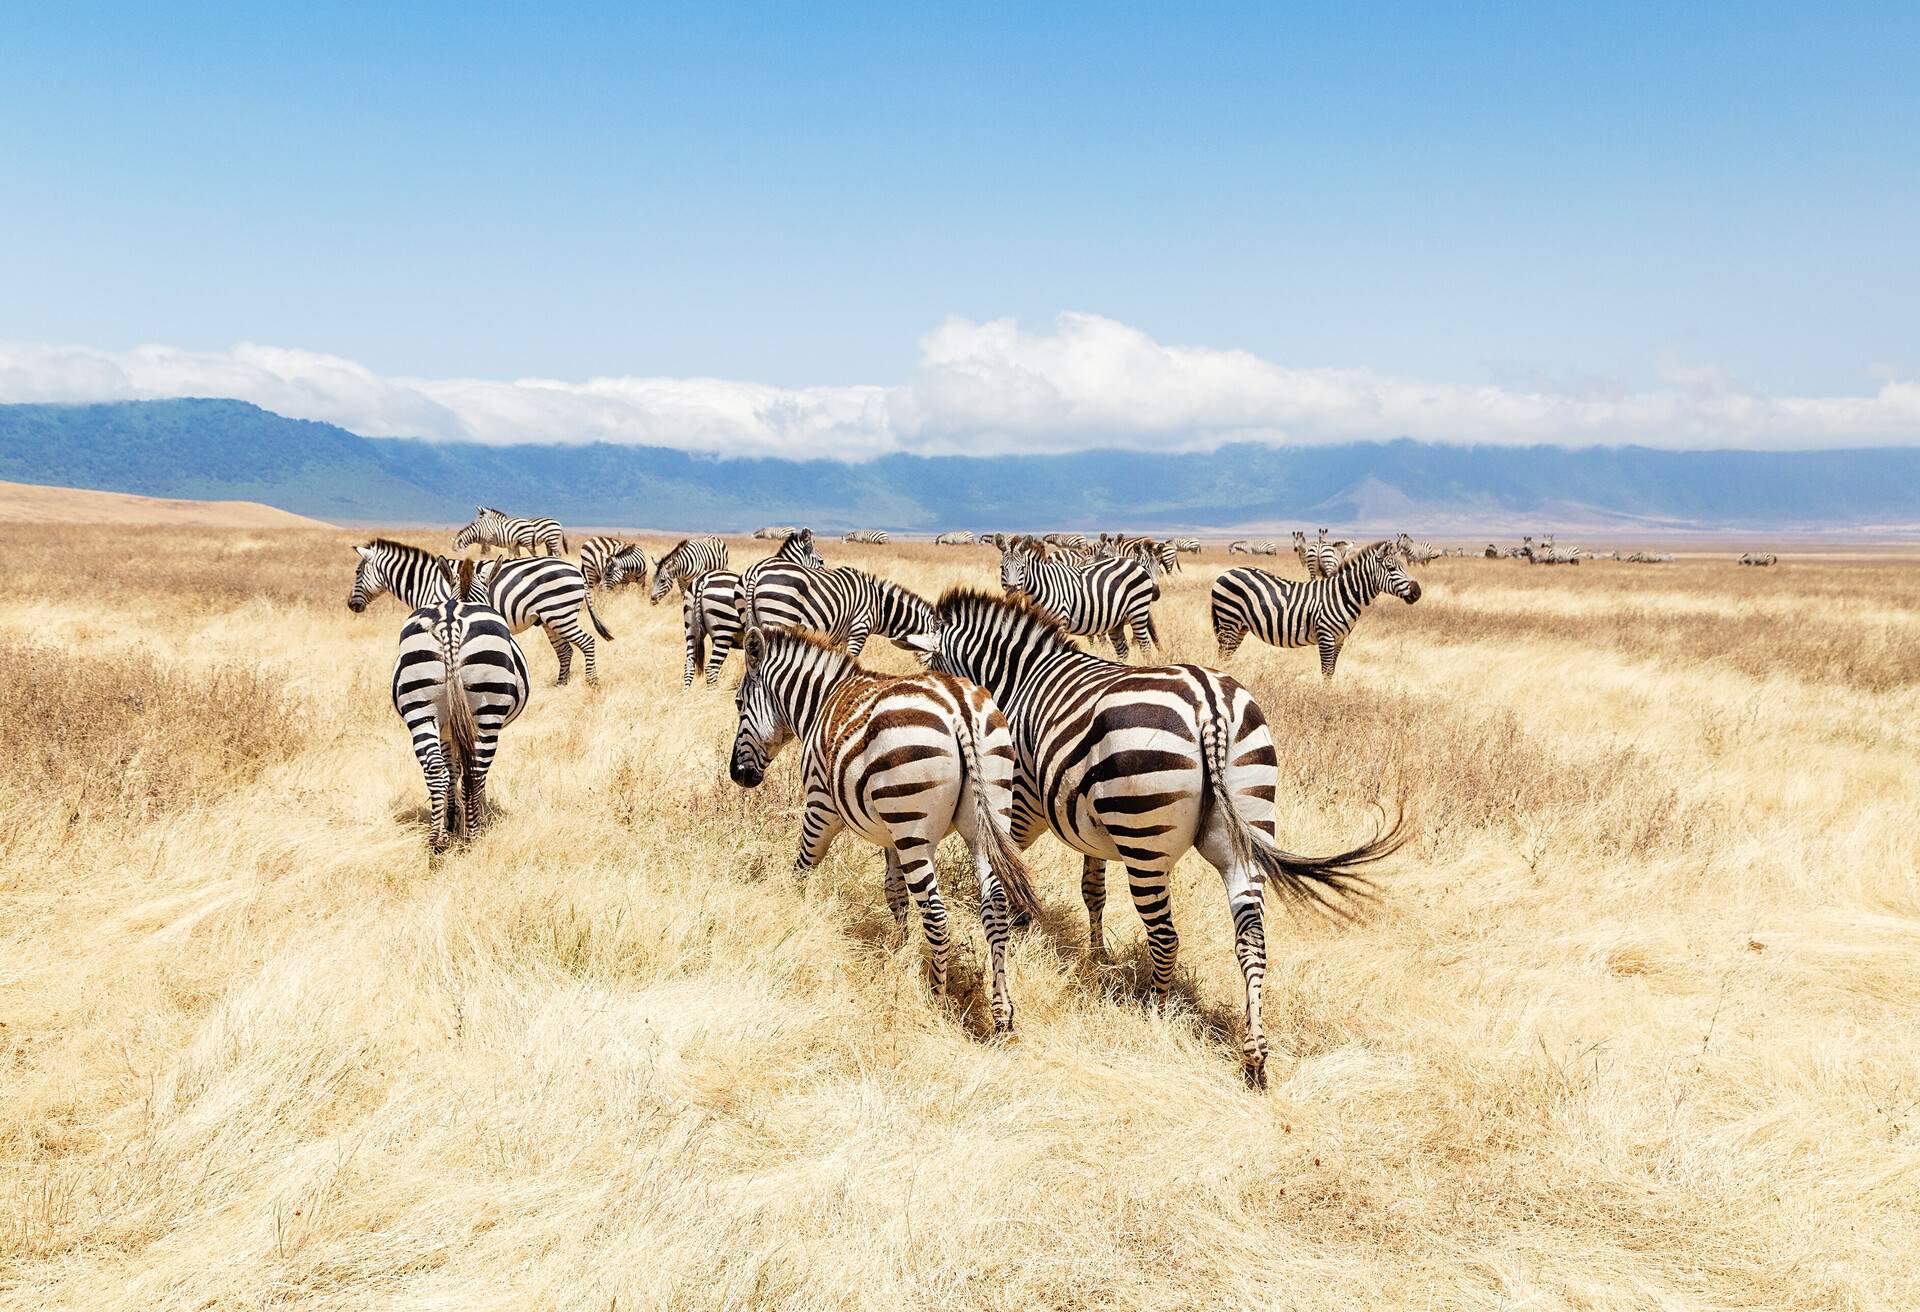 A group of zebras running across an open field of long brown grass.